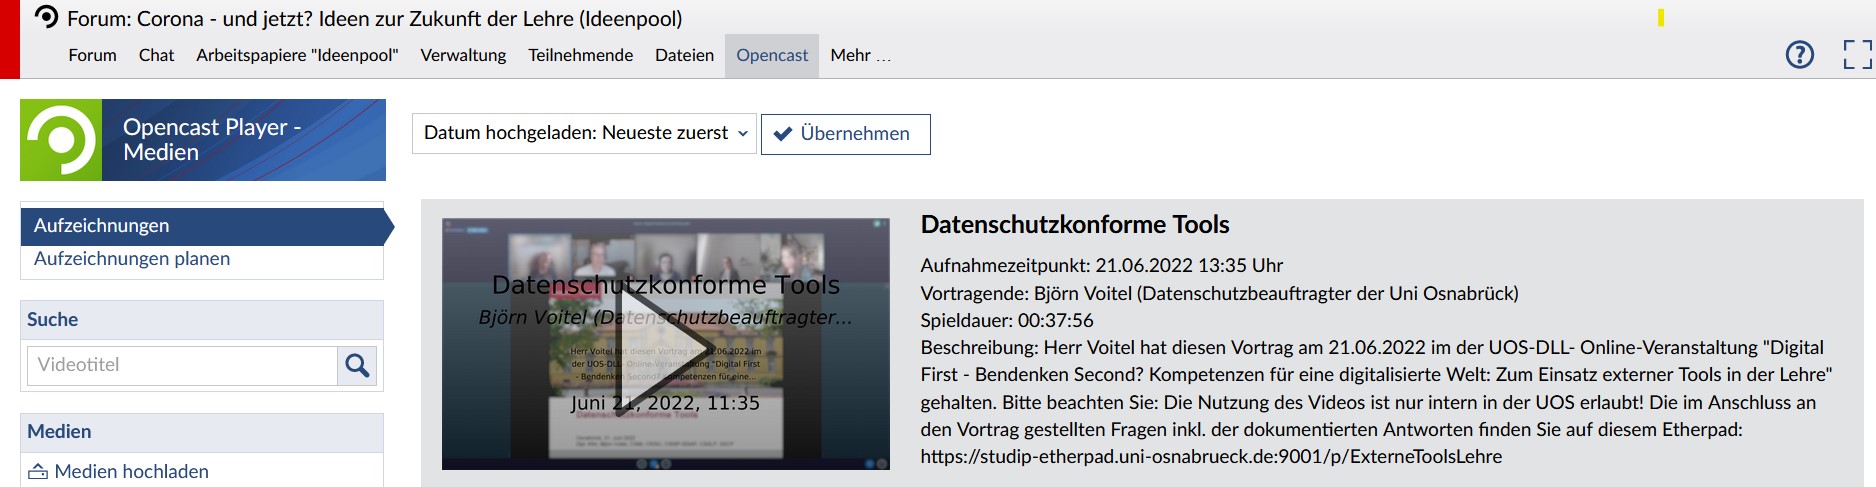 Screenshot der Stud.IP-Veranstaltung, in der das Video des Vortrags von Björn Voitel zu datenschutzkonformen Tools an der Uni Osnabrück zu finden ist.